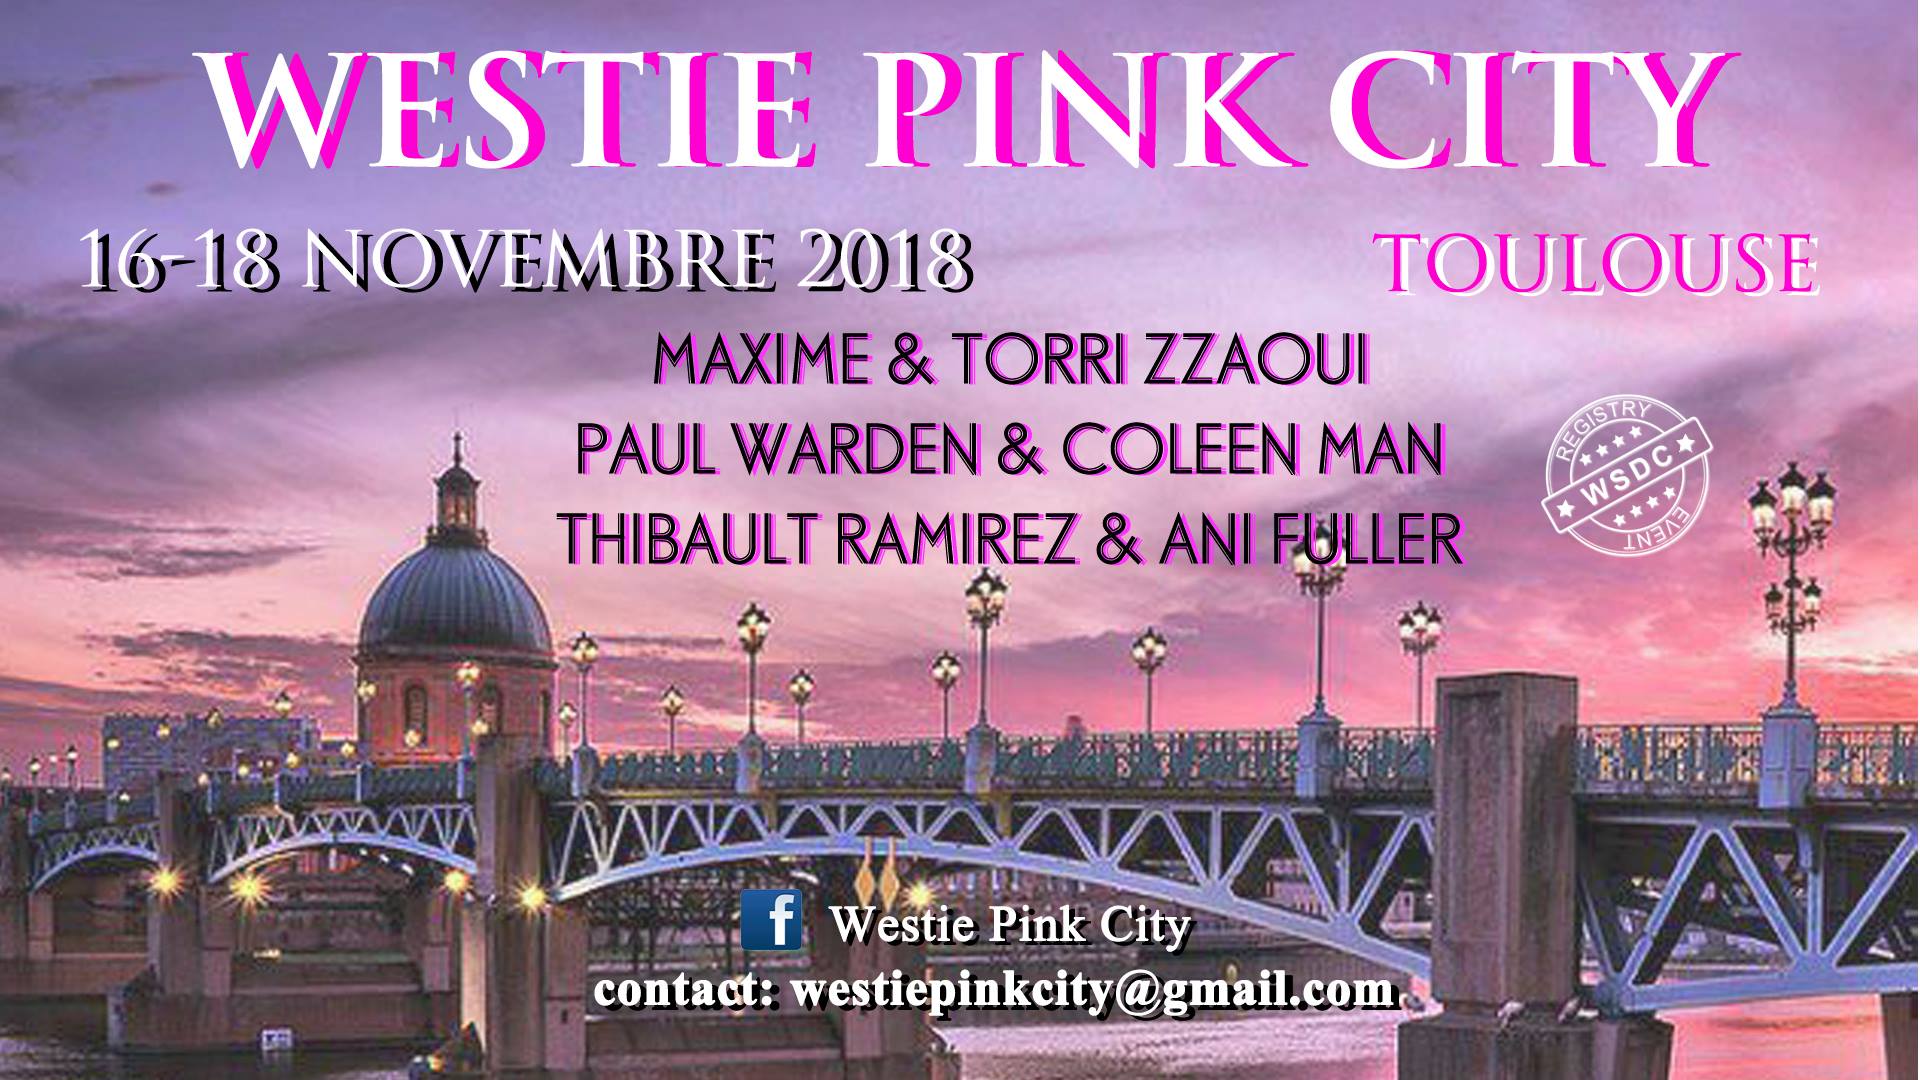 westie pink city novembre 2018 Toulouse West Coast Swing